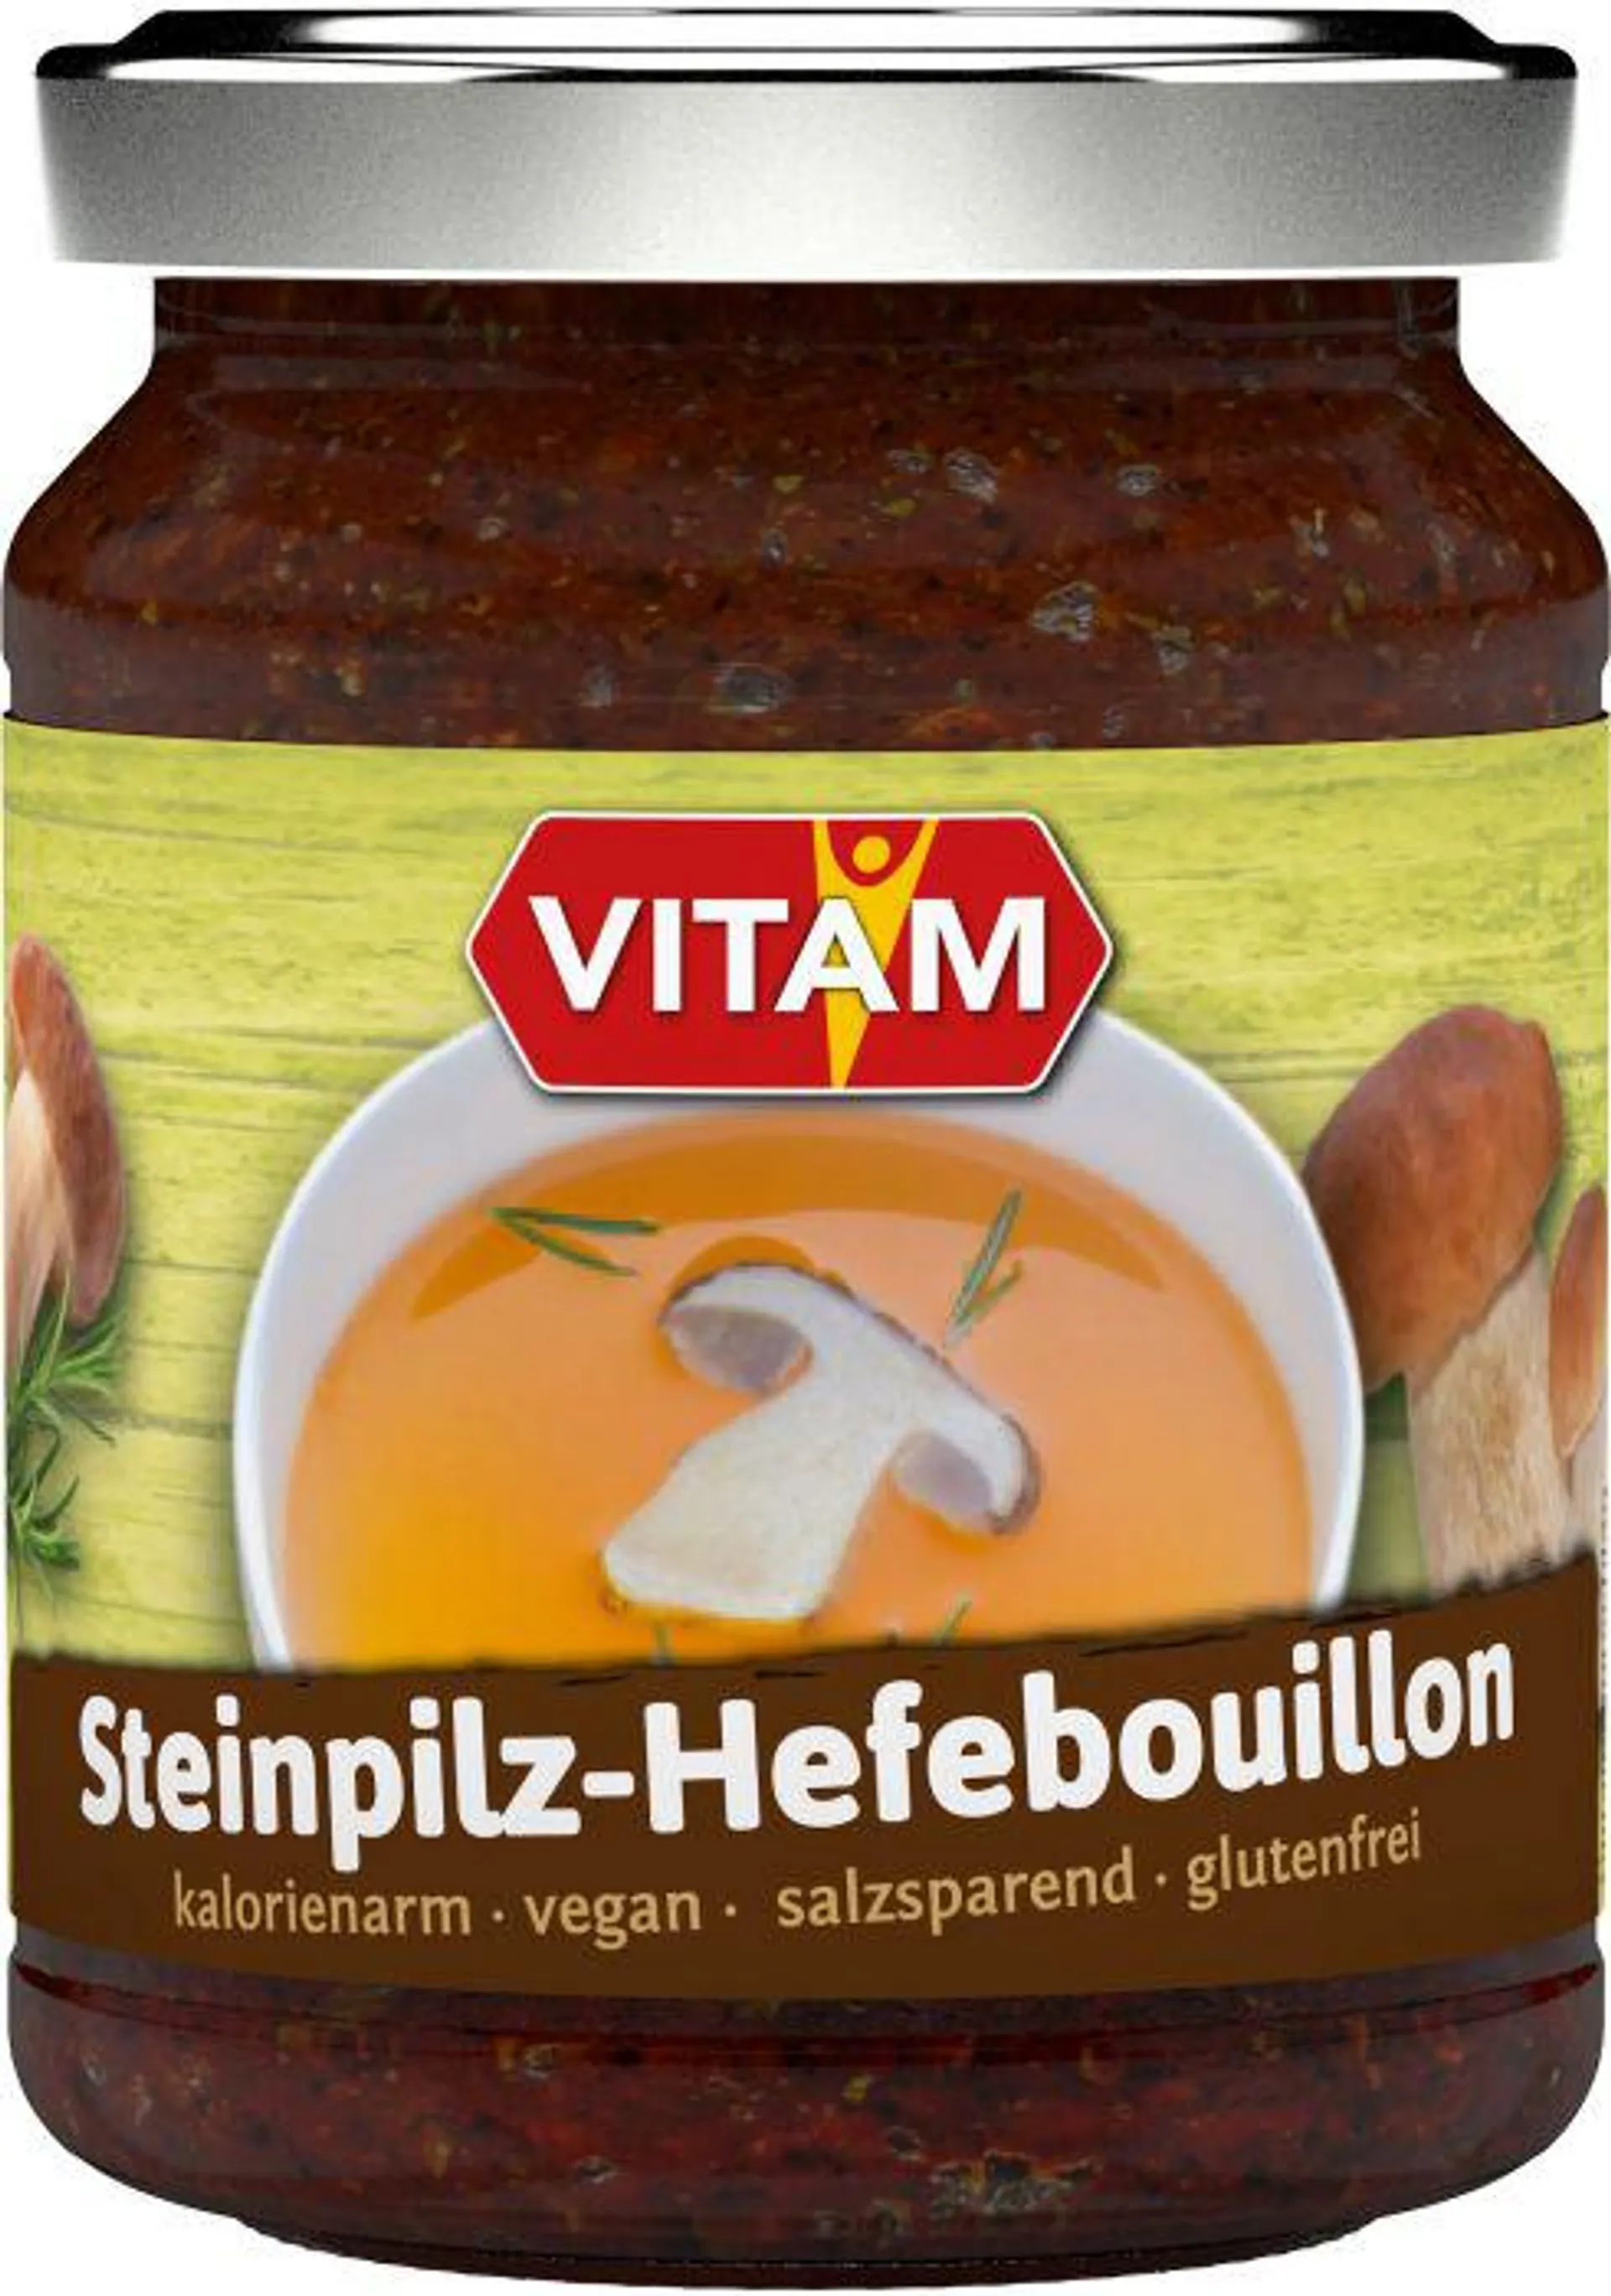 VITAM Steinpilz-Hefebouillon 150g